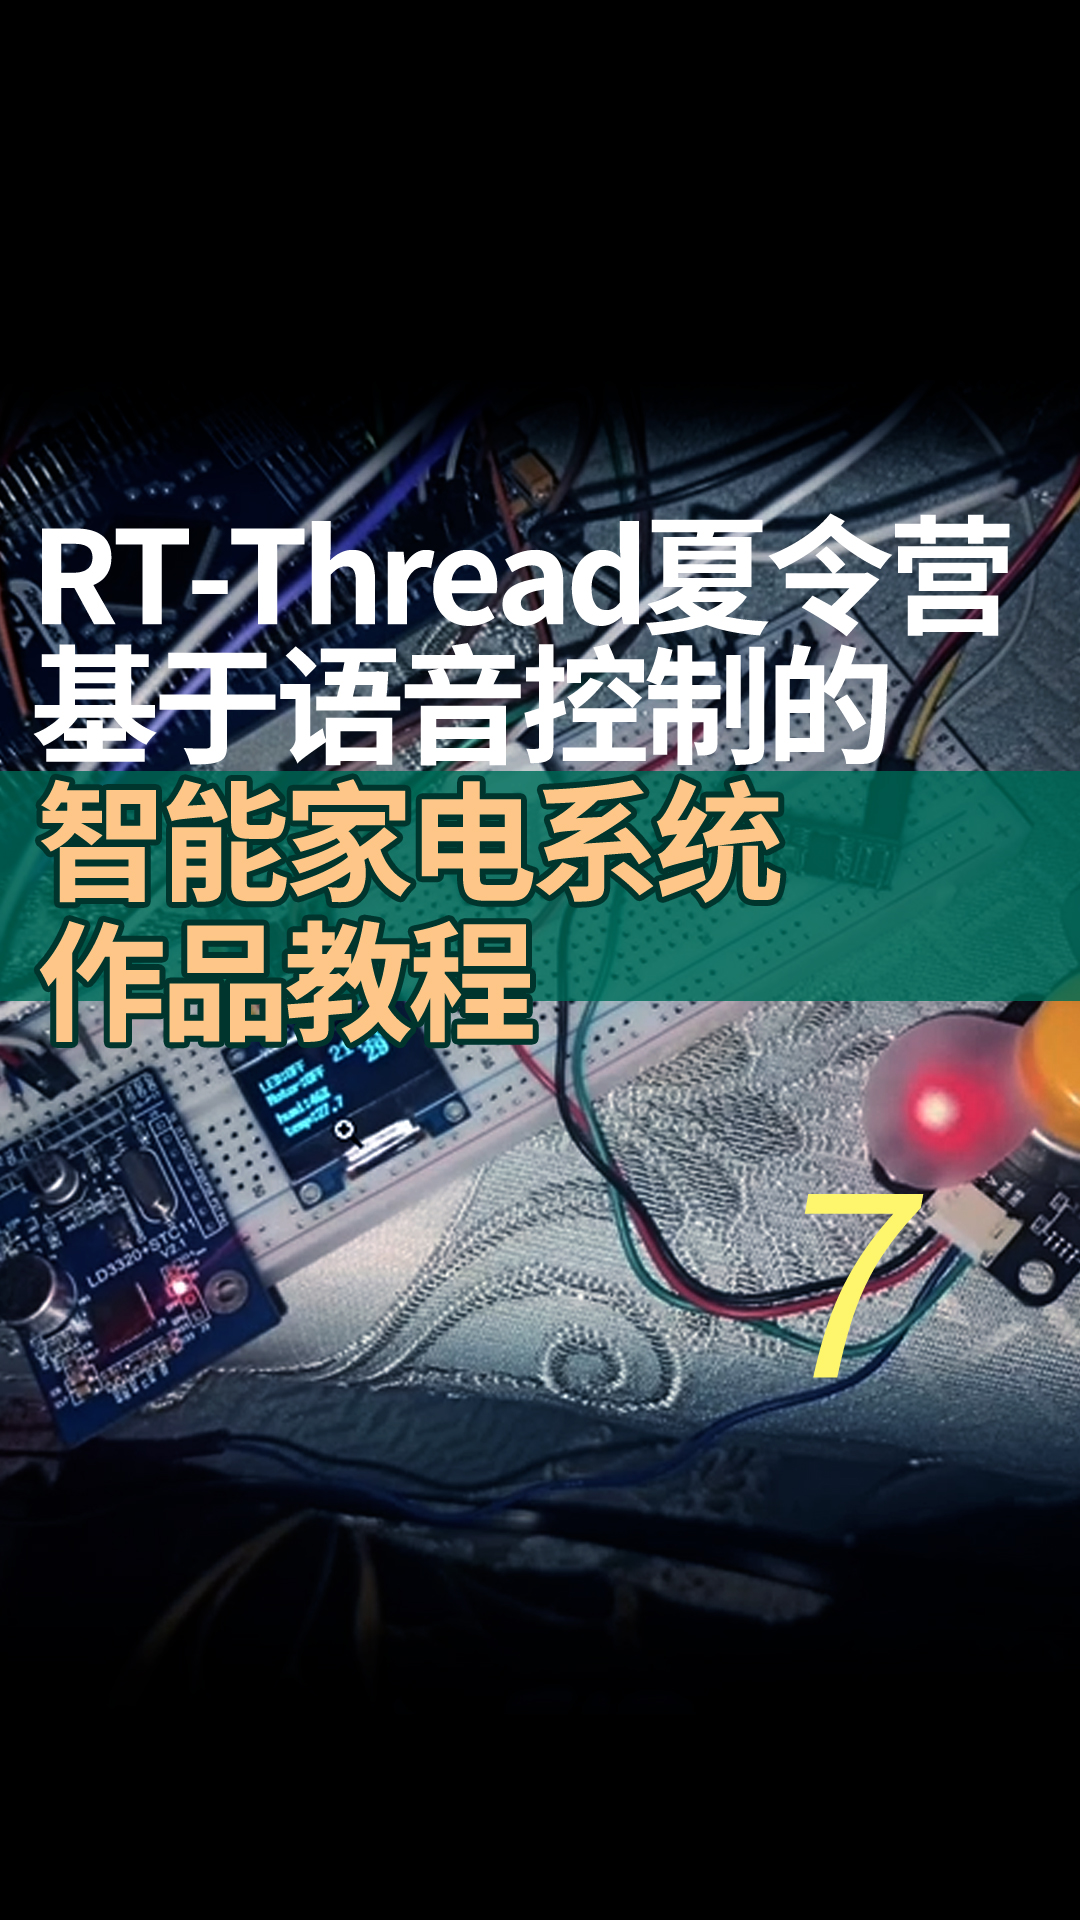 RT-Thread夏令营基于语音控制的智能家电系统作品教程 - 7一些错误的地方纠正